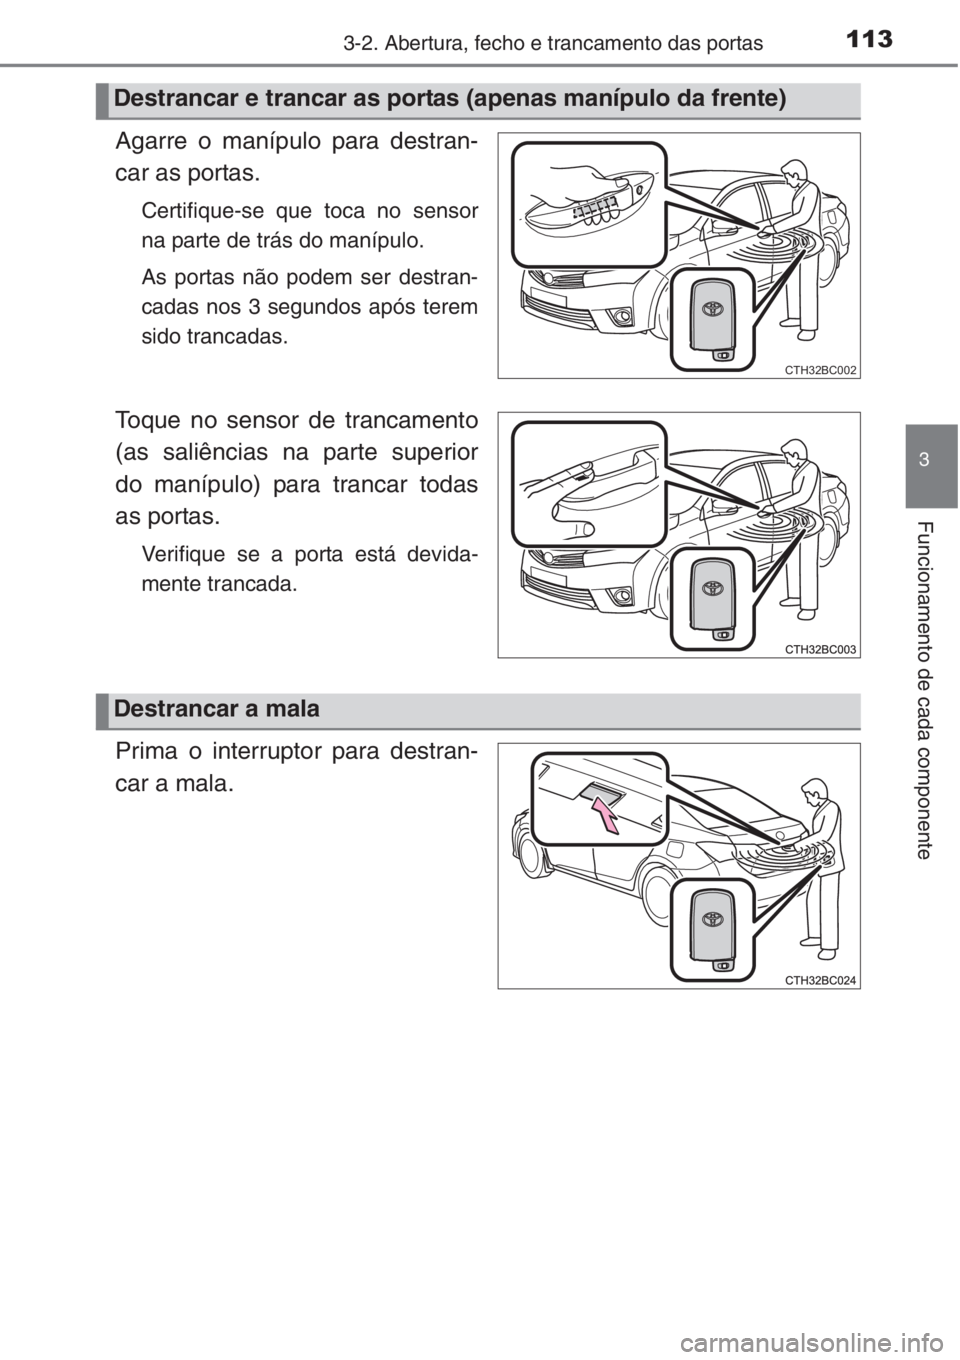 TOYOTA COROLLA 2015  Manual de utilização (in Portuguese) 1133-2. Abertura, fecho e trancamento das portas
3
Funcionamento de cada componente
Agarre o manípulo para destran-
car as portas.
Certifique-se que toca no sensor
na parte de trás do manípulo.
As 